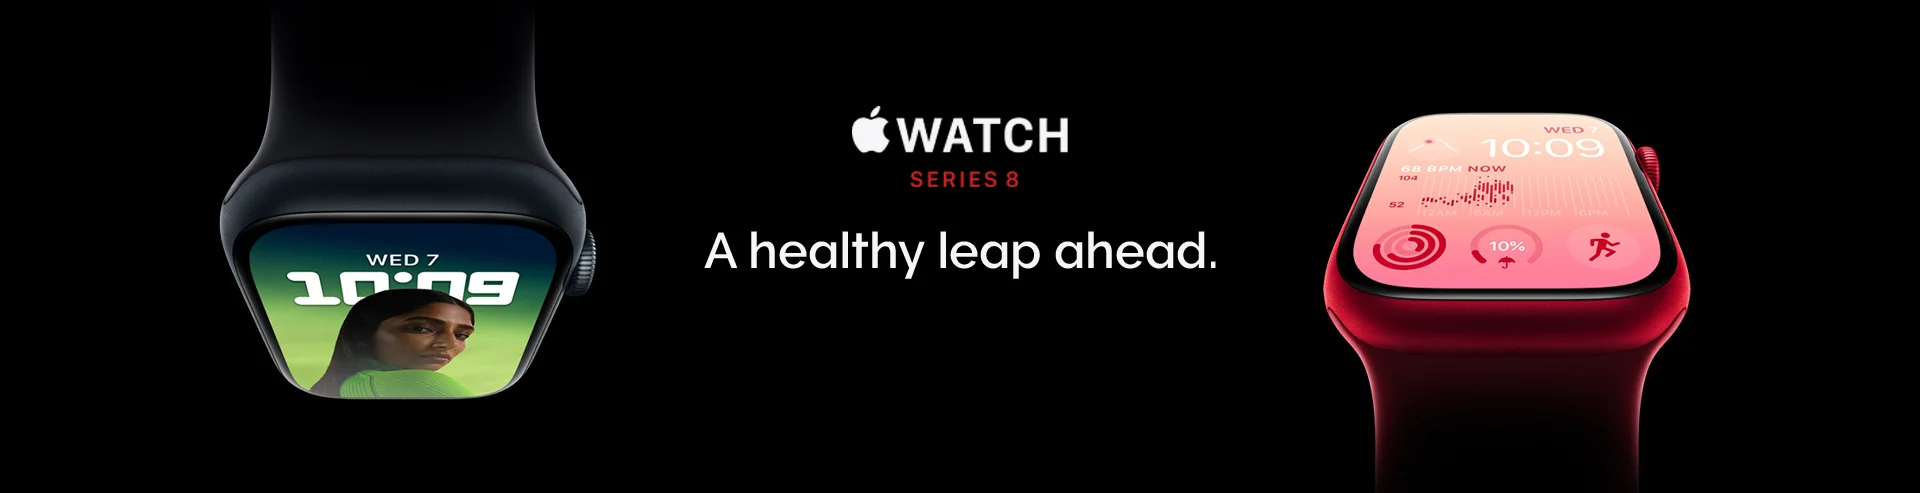 VM-Hero-Apple-Watch-8-Pre-Order-Now-1920x493.webp